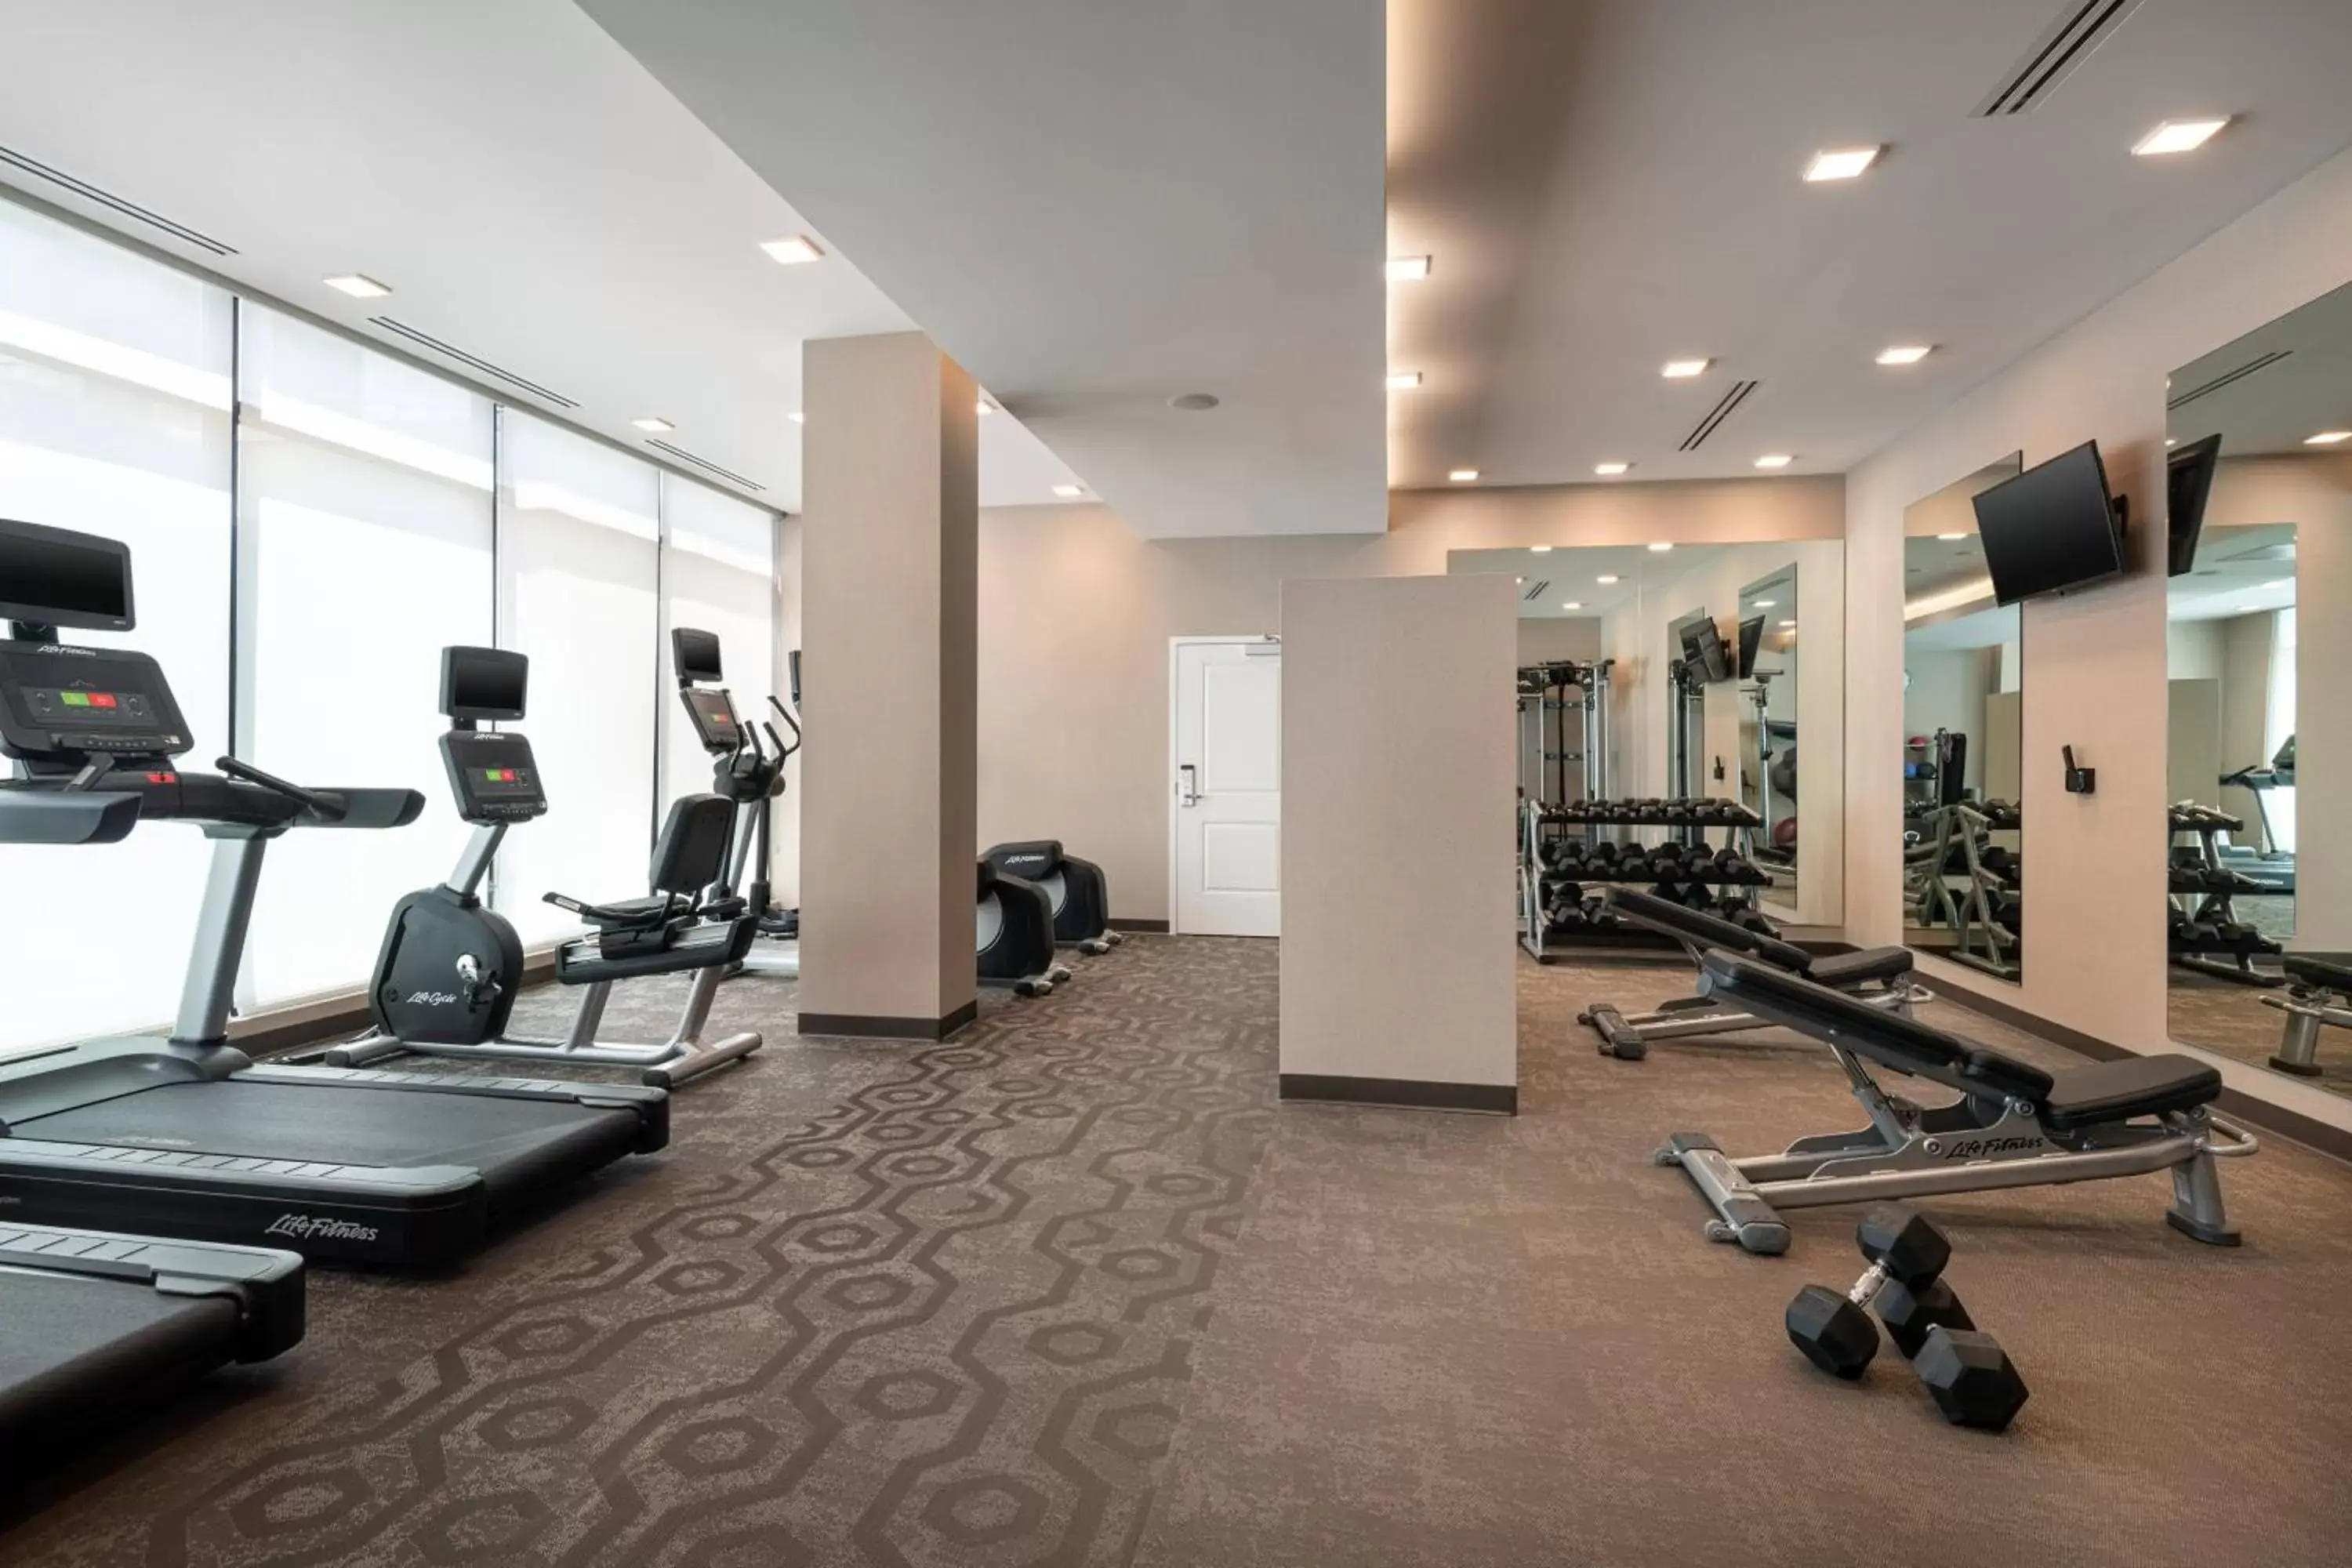 Fitness centre/facilities, Fitness Center/Facilities in Residence Inn Walnut Creek